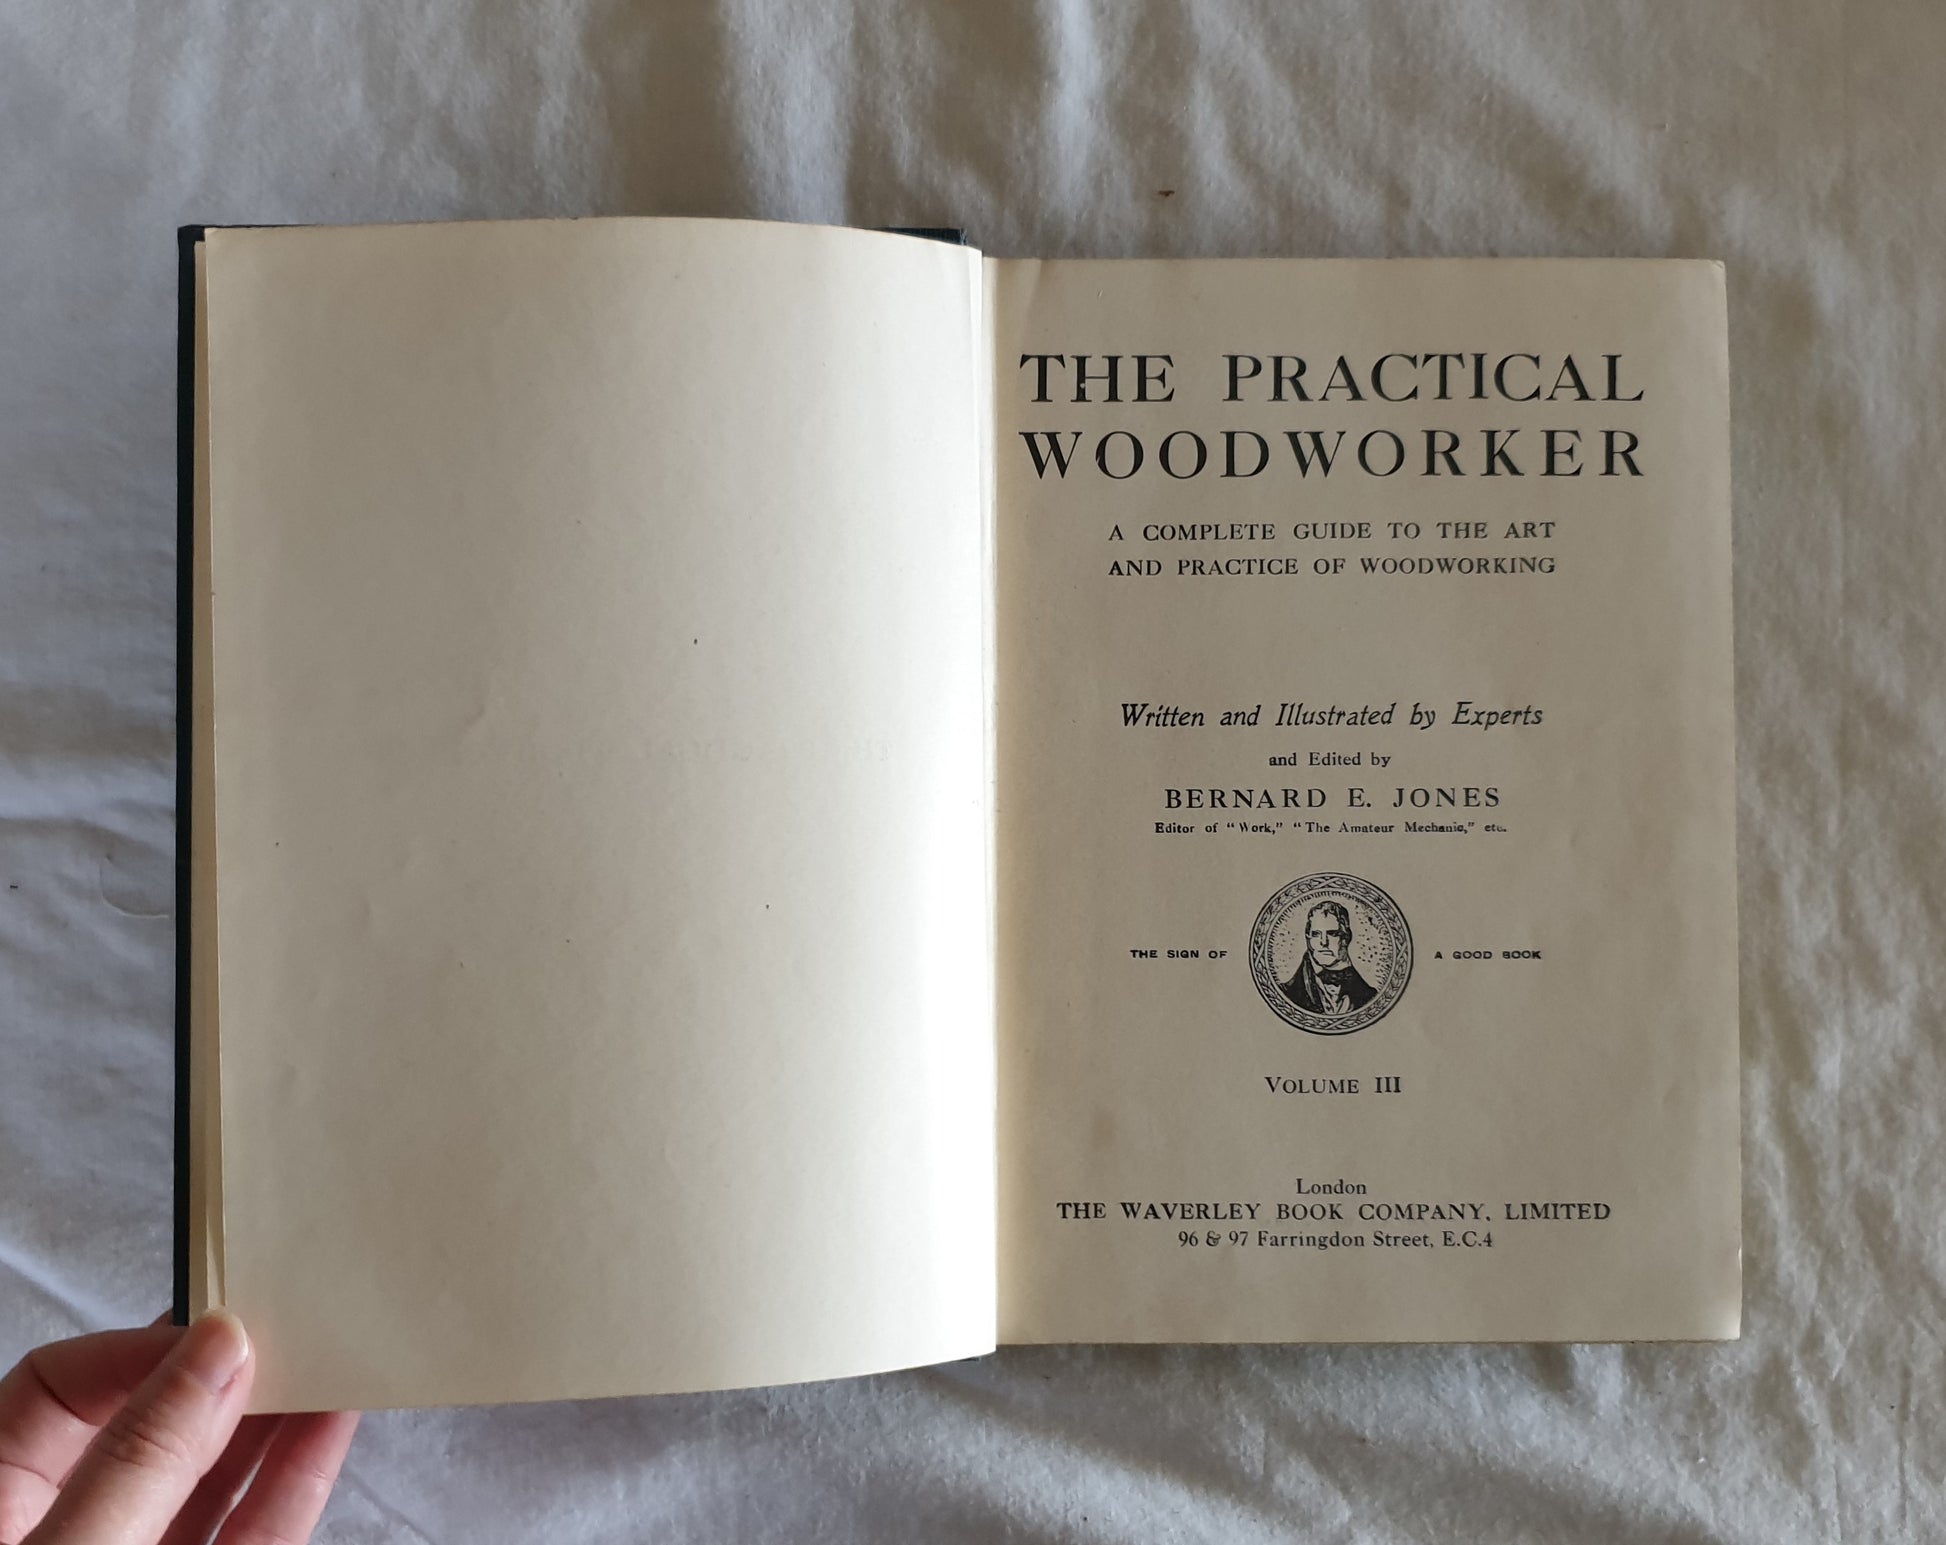 The Practical Woodworker by Bernard E. Jones - Volume 2